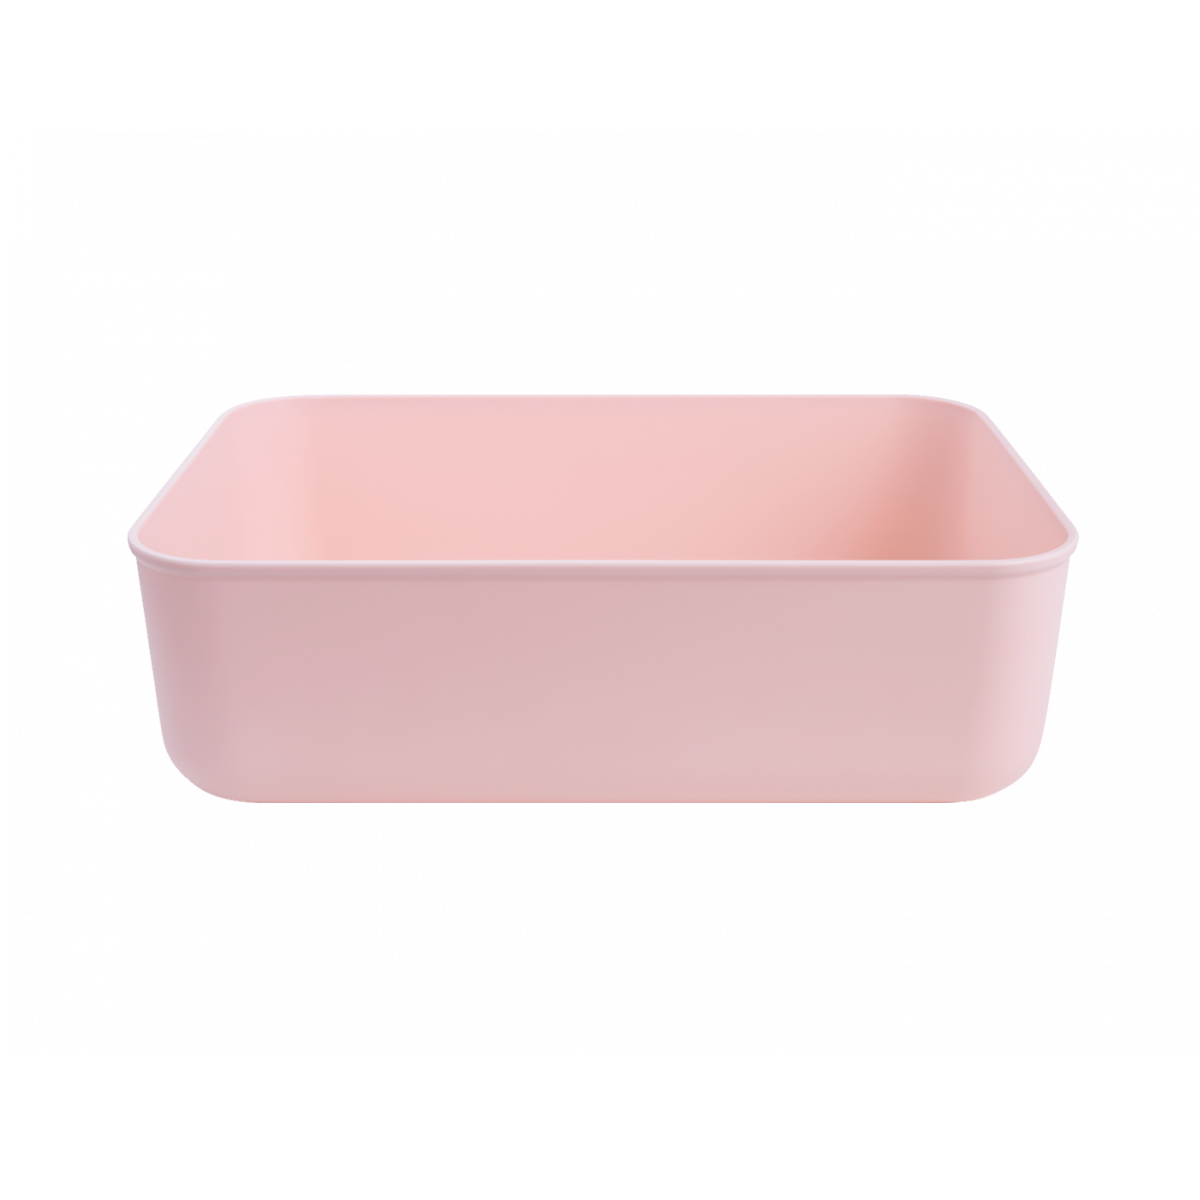 Ящик для зберігання MVM пластиковий рожевий 80x180x257 FH-10 XS LIGHT PINK